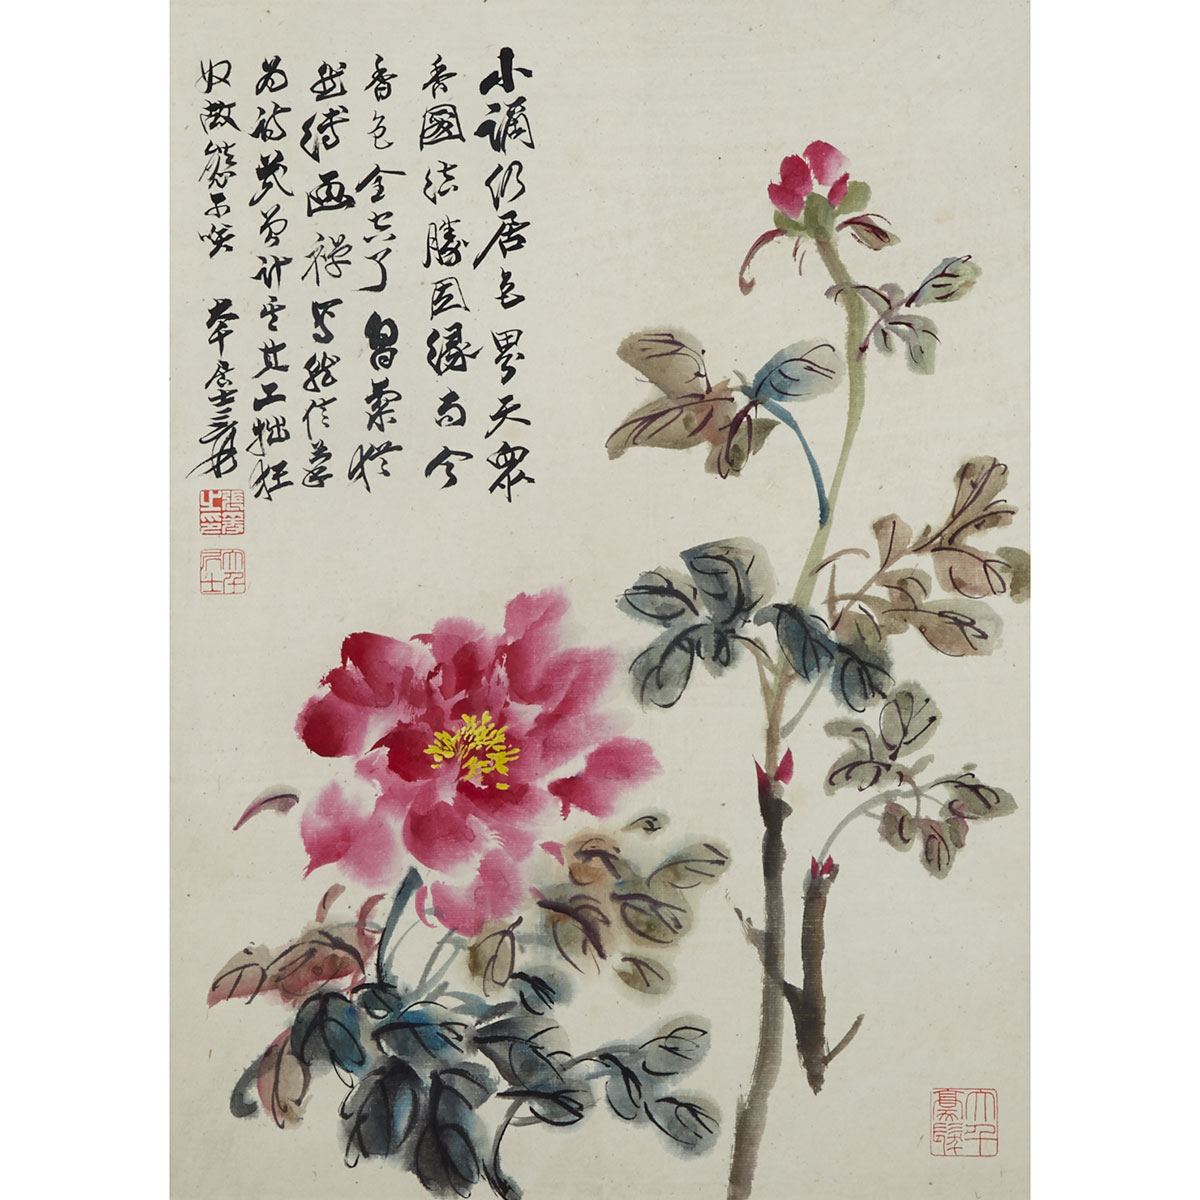 Attributed to Zhang Daqian(1899-1983)